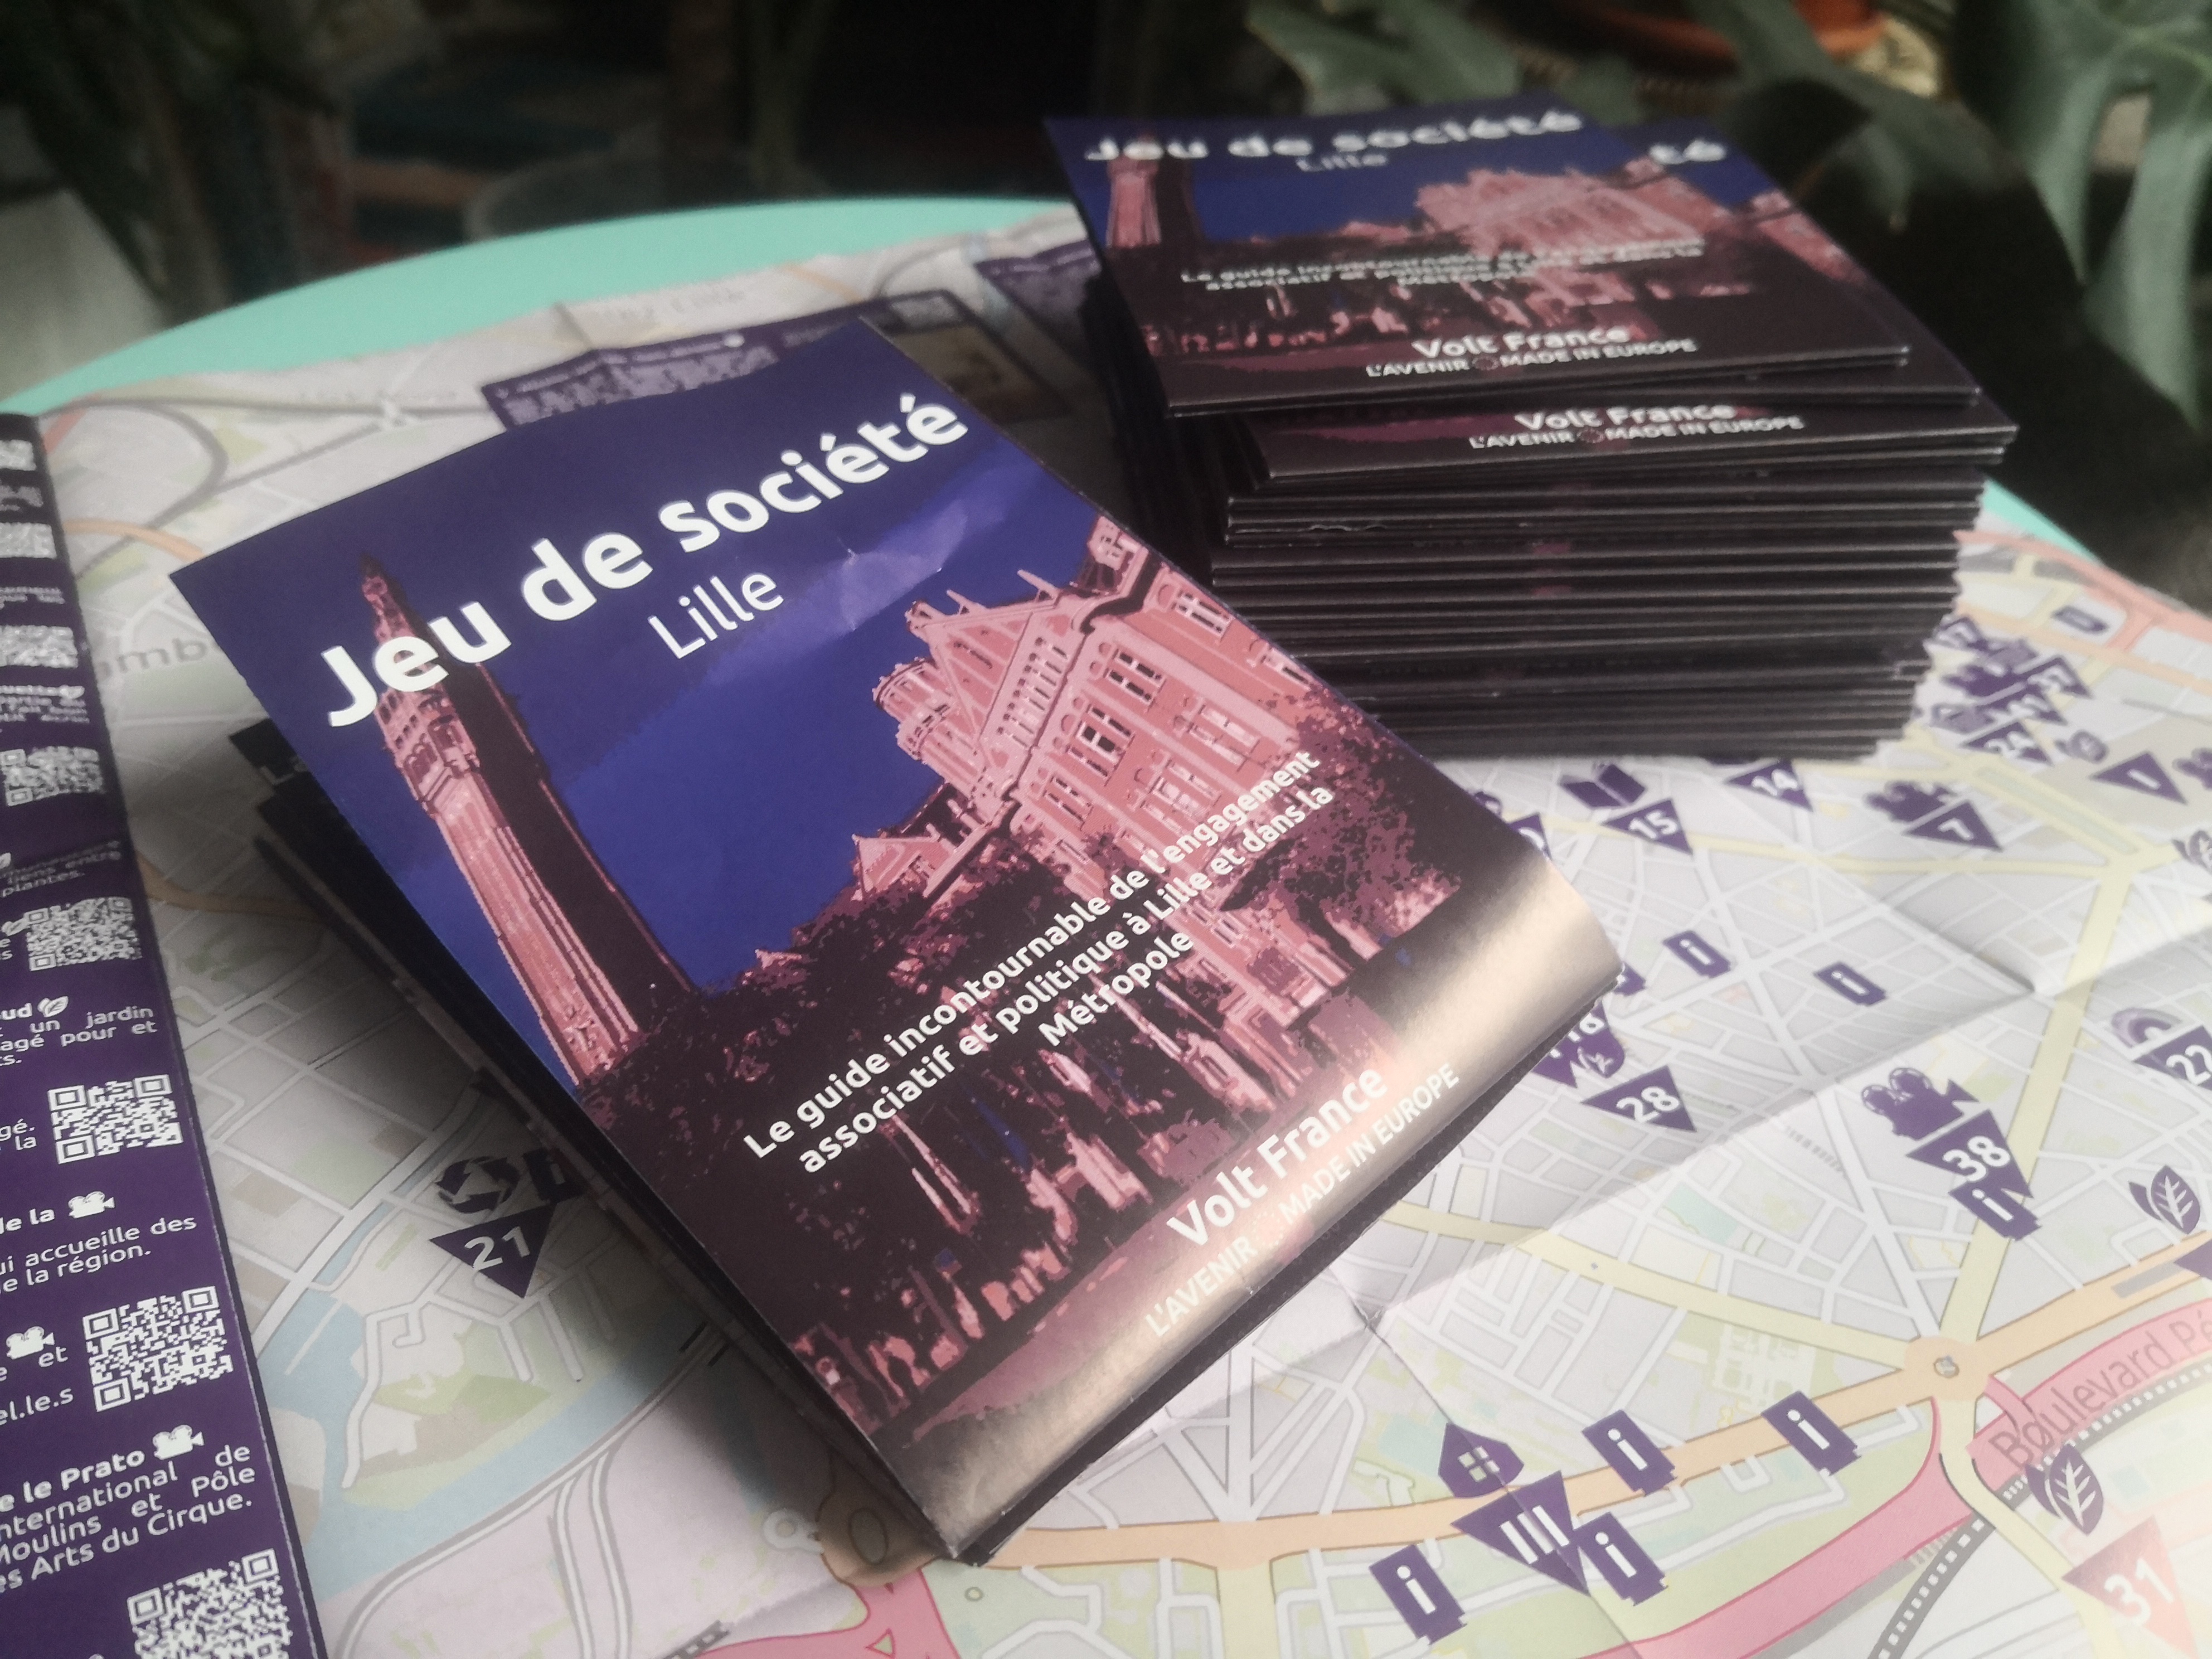 Volt Lille - Jeu de société - guide de citoyennété pour la jeunesse de Lille